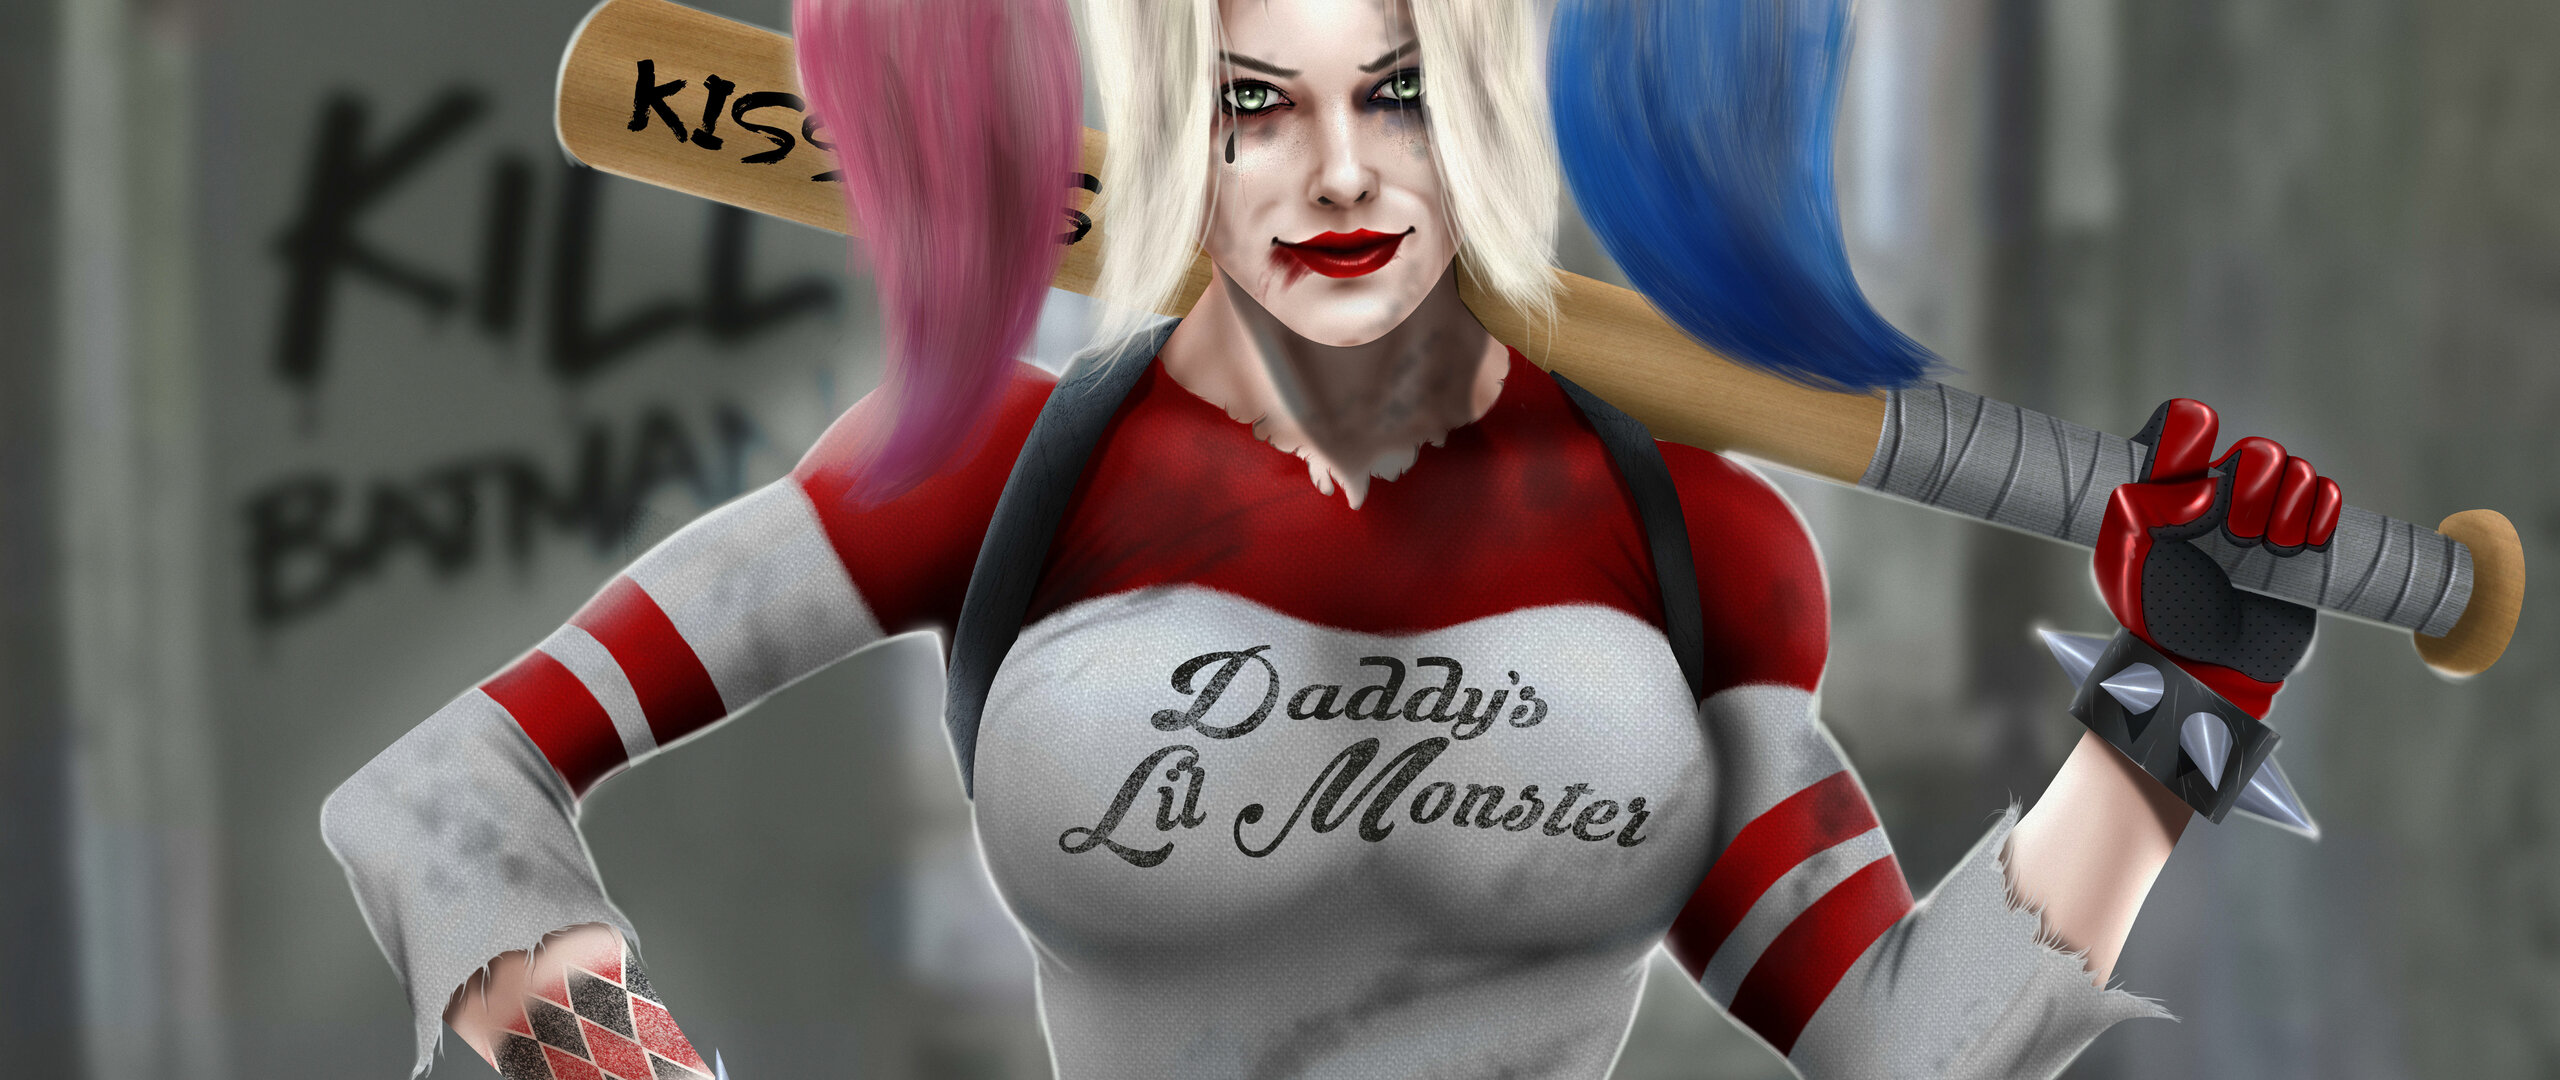 Harley Quinn 10k In 2560x1080 Resolution. harley-quinn-10k-dt.jpg. 